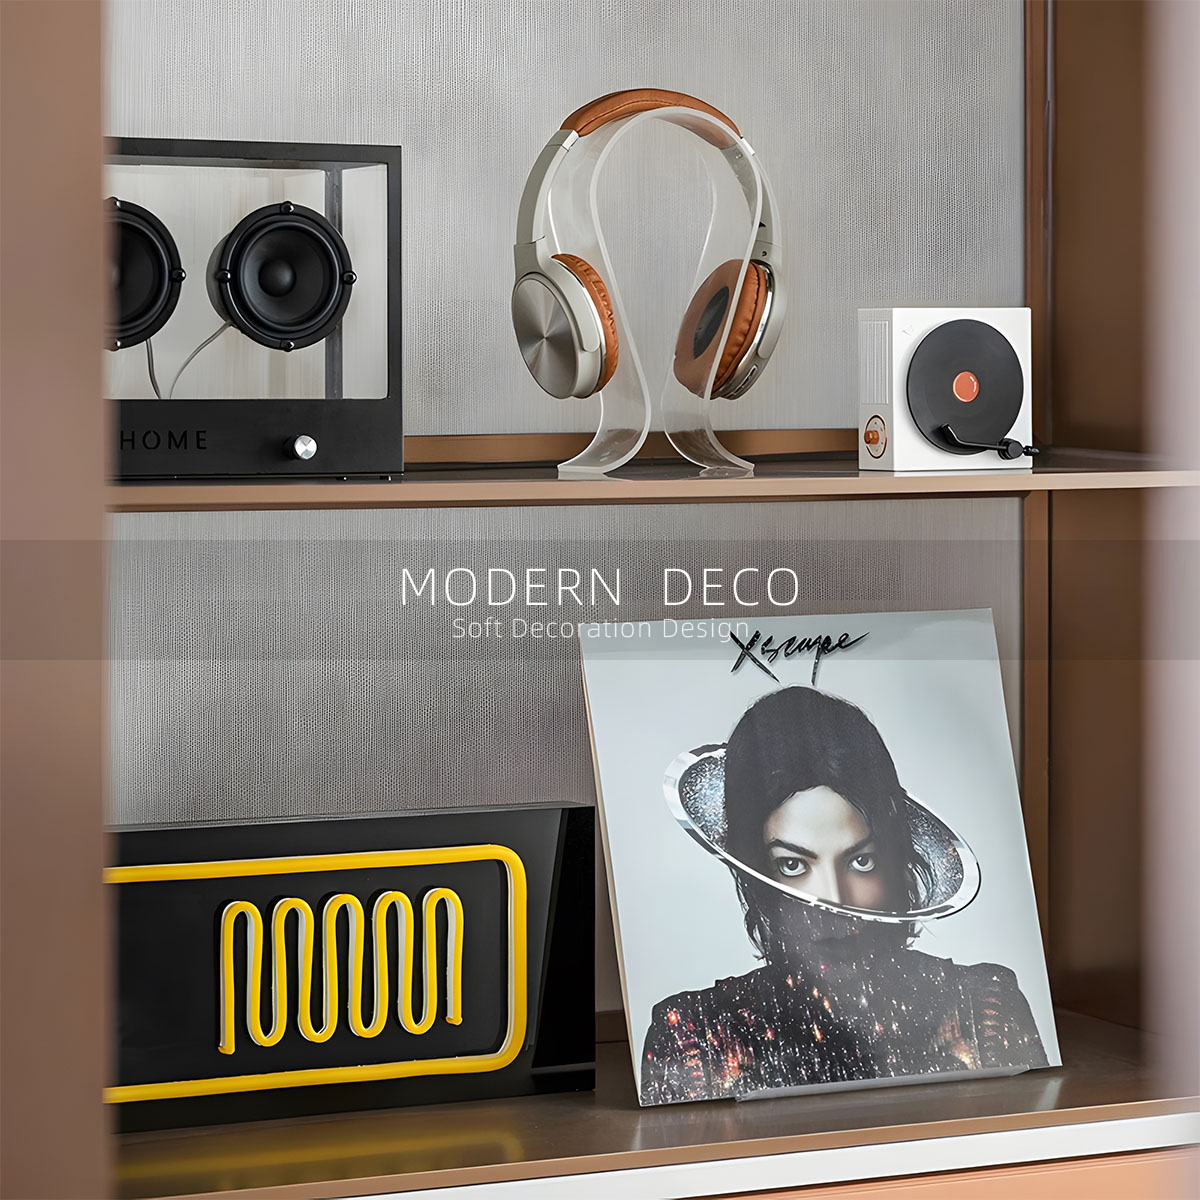 MODERN DECO现代复古黑白音响耳机唱片组合摆件样板间音乐主题